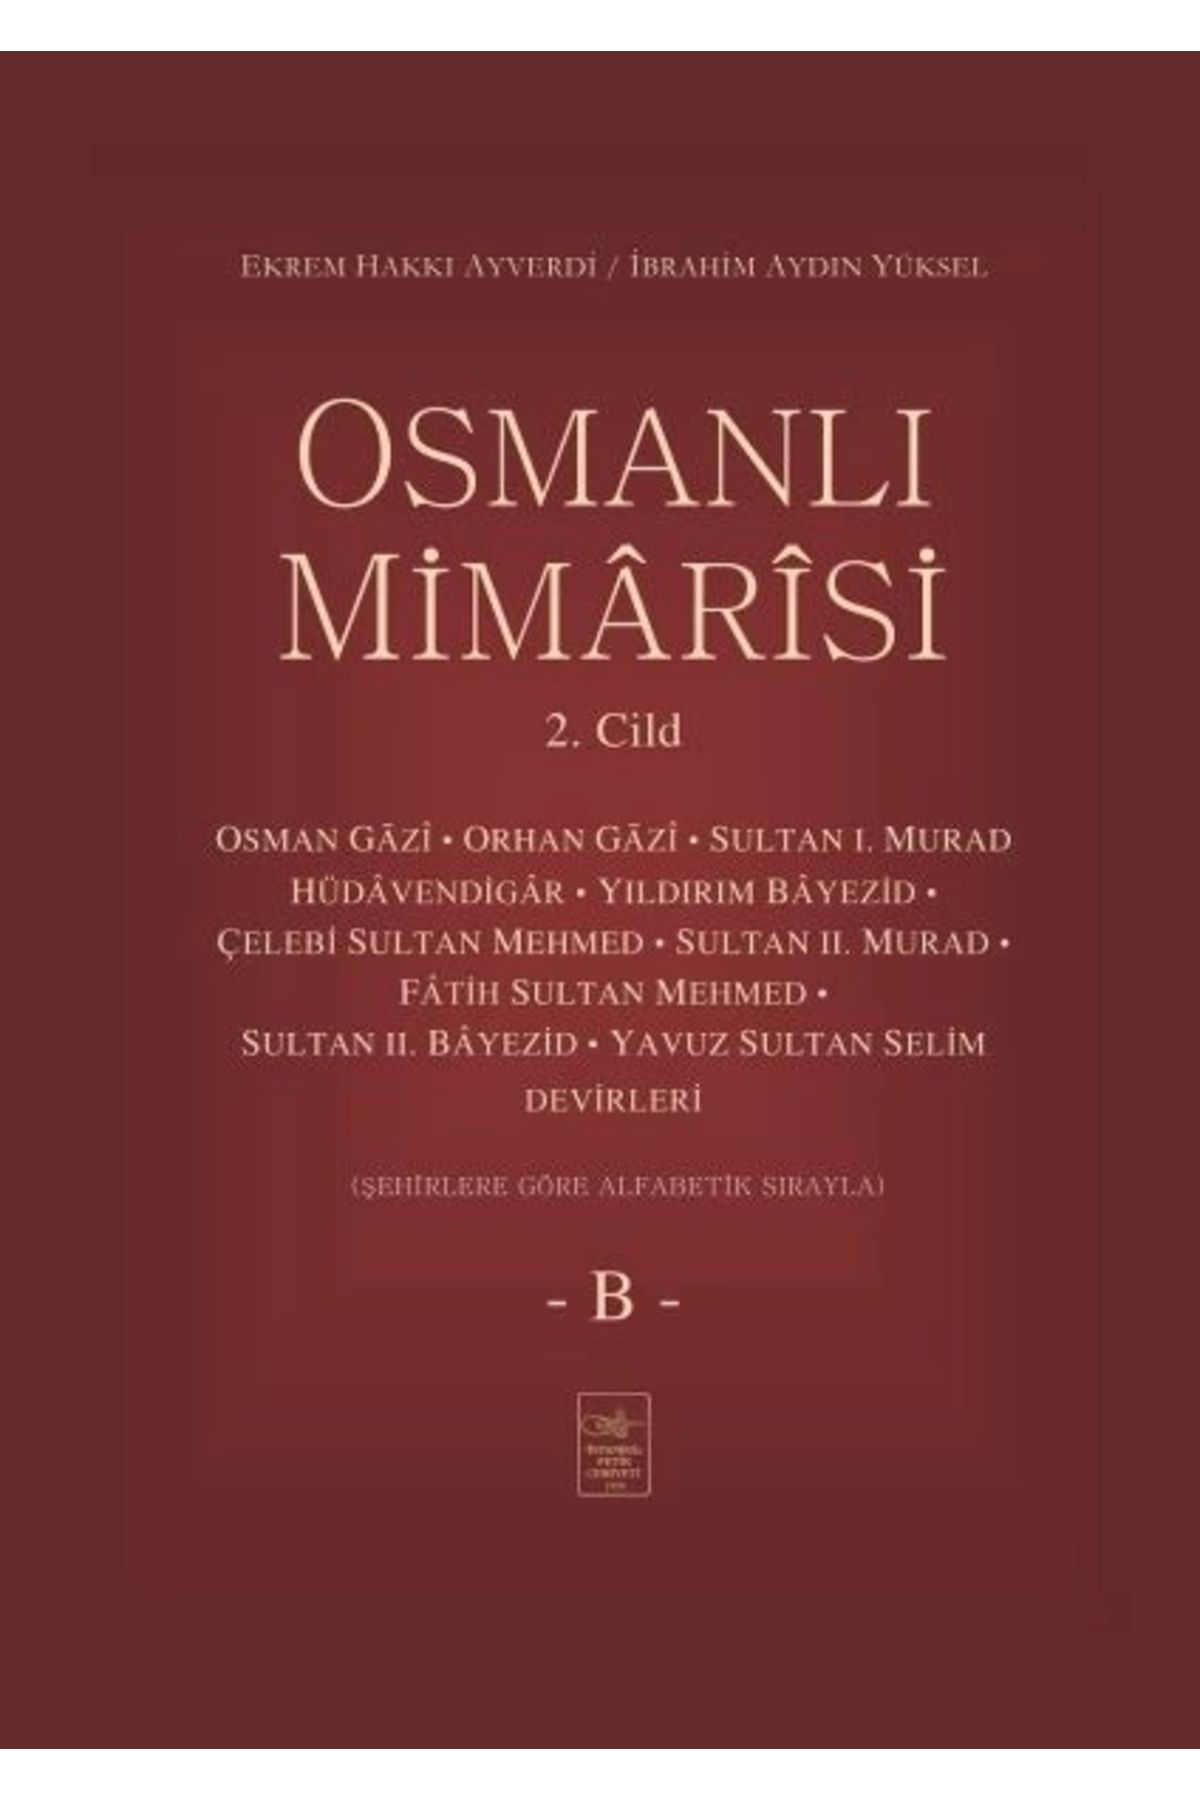 İstanbul Fetih Cemiyeti Yayınları Osmanlı Mimârîsi 2. Cilt (B)